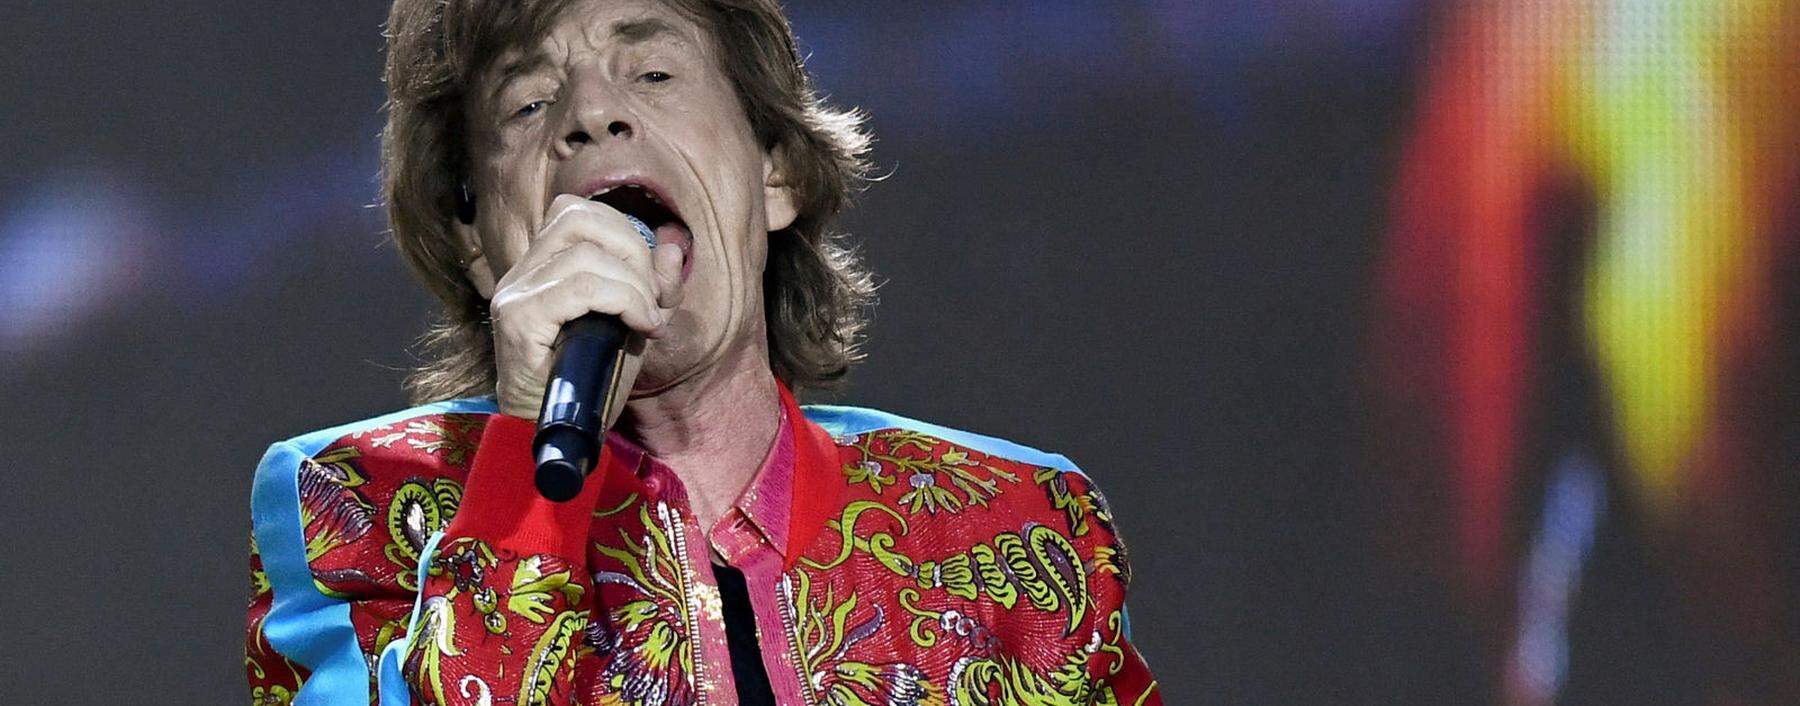 „I can't get no . . .“: Mick Jagger, geboren am 26. Juli 1943 in Dartford bei London, seit 60 Jahren Sänger der Rolling Stones.